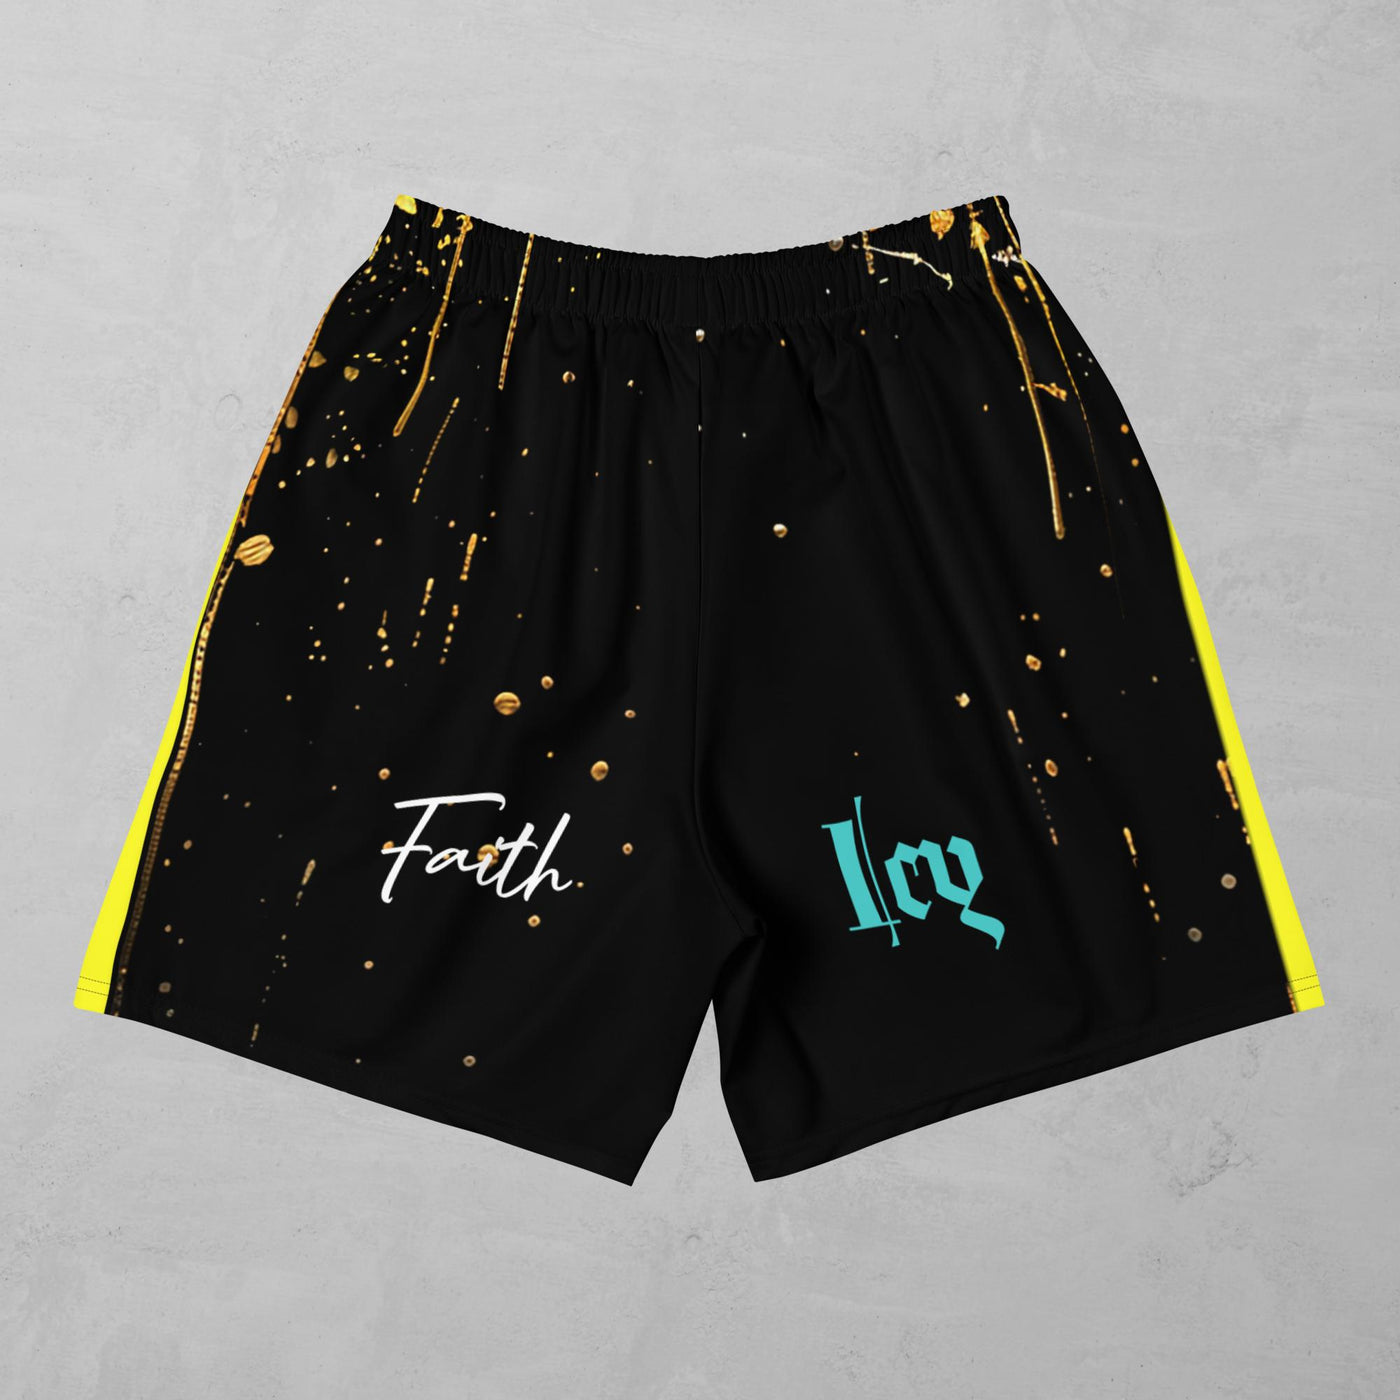 J.A Faith Gold Bull- Men's Athletic Shorts